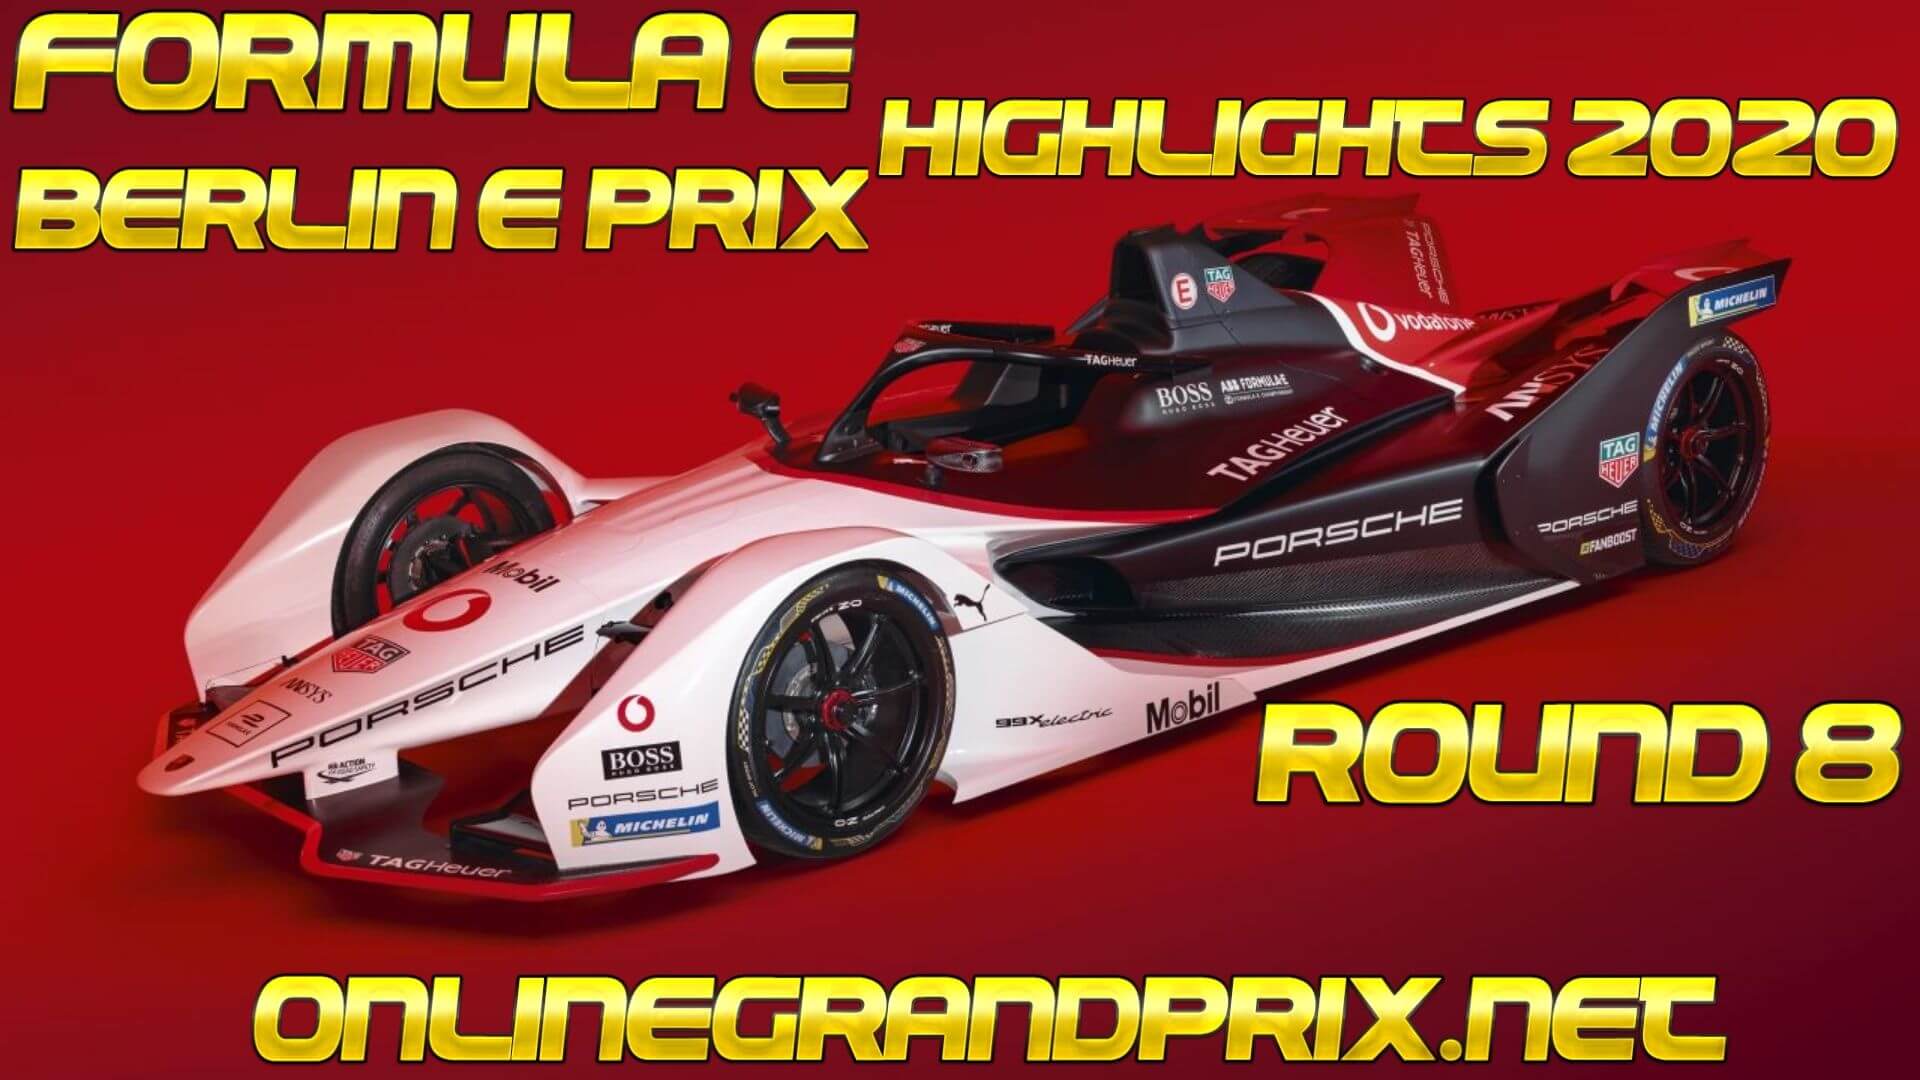 Berlin E Prix Formula E Highlights 2020 Round 8